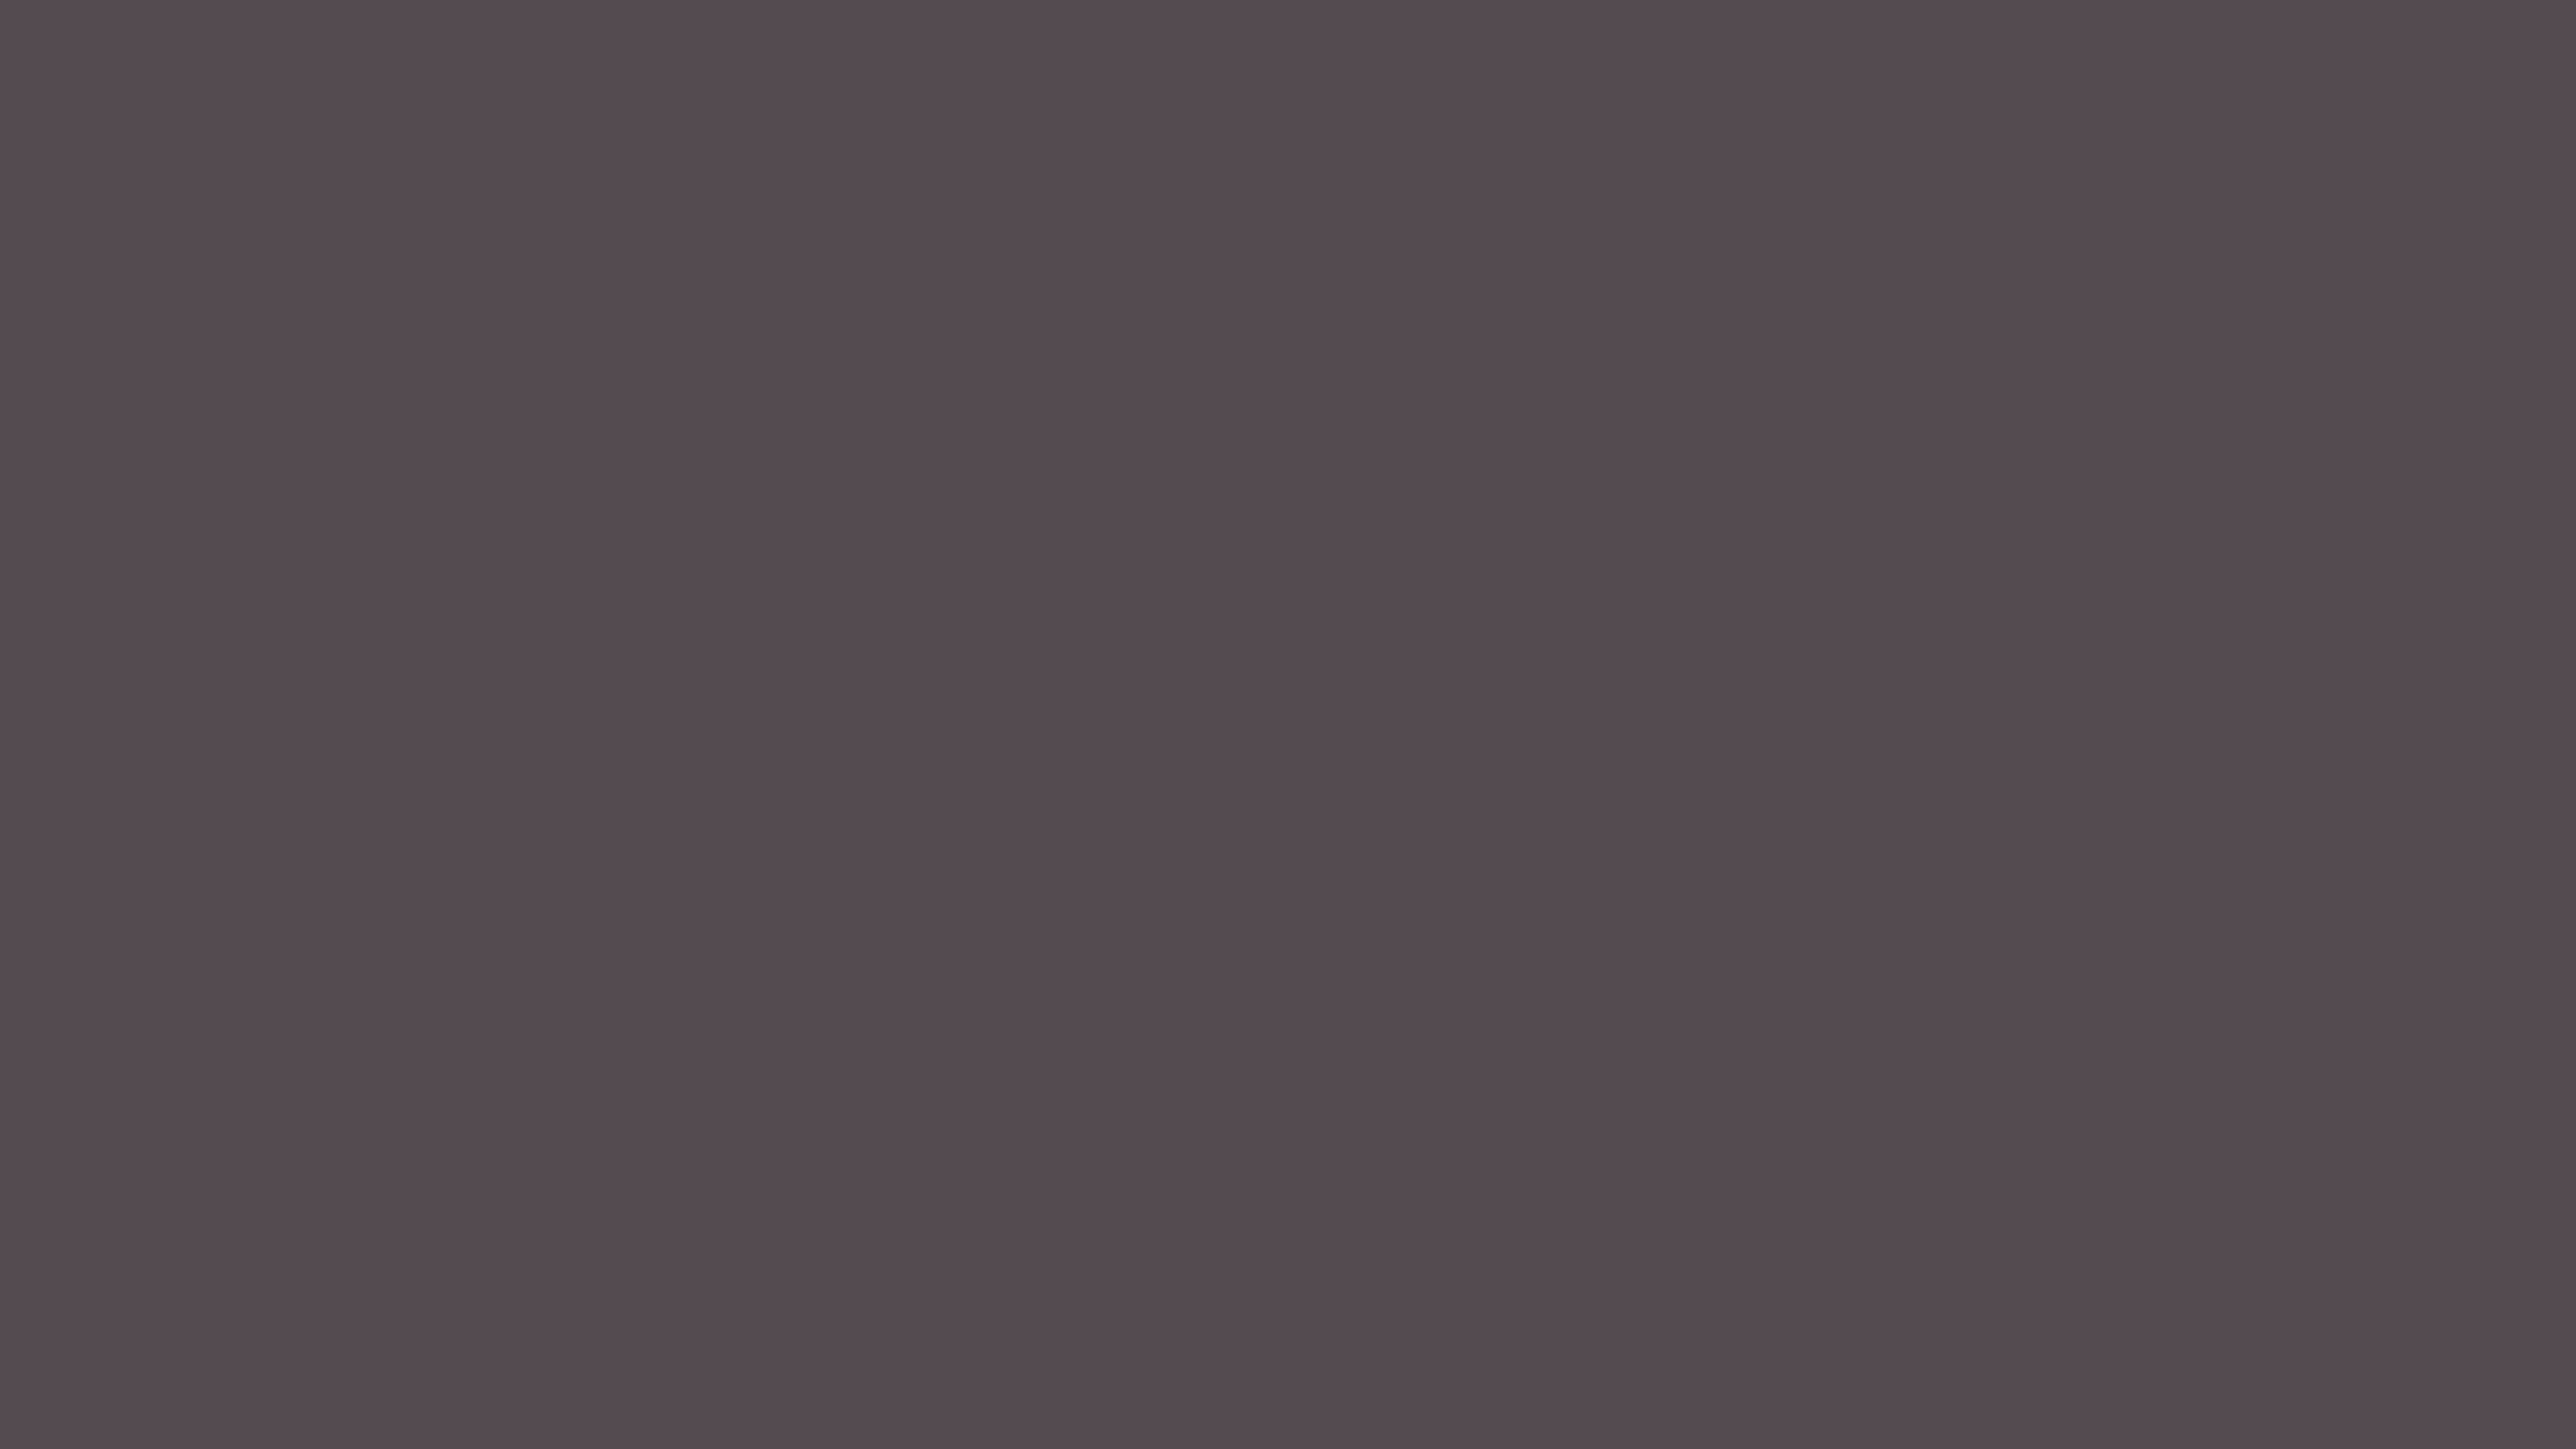 4096x2304 Dark Liver Solid Color Background